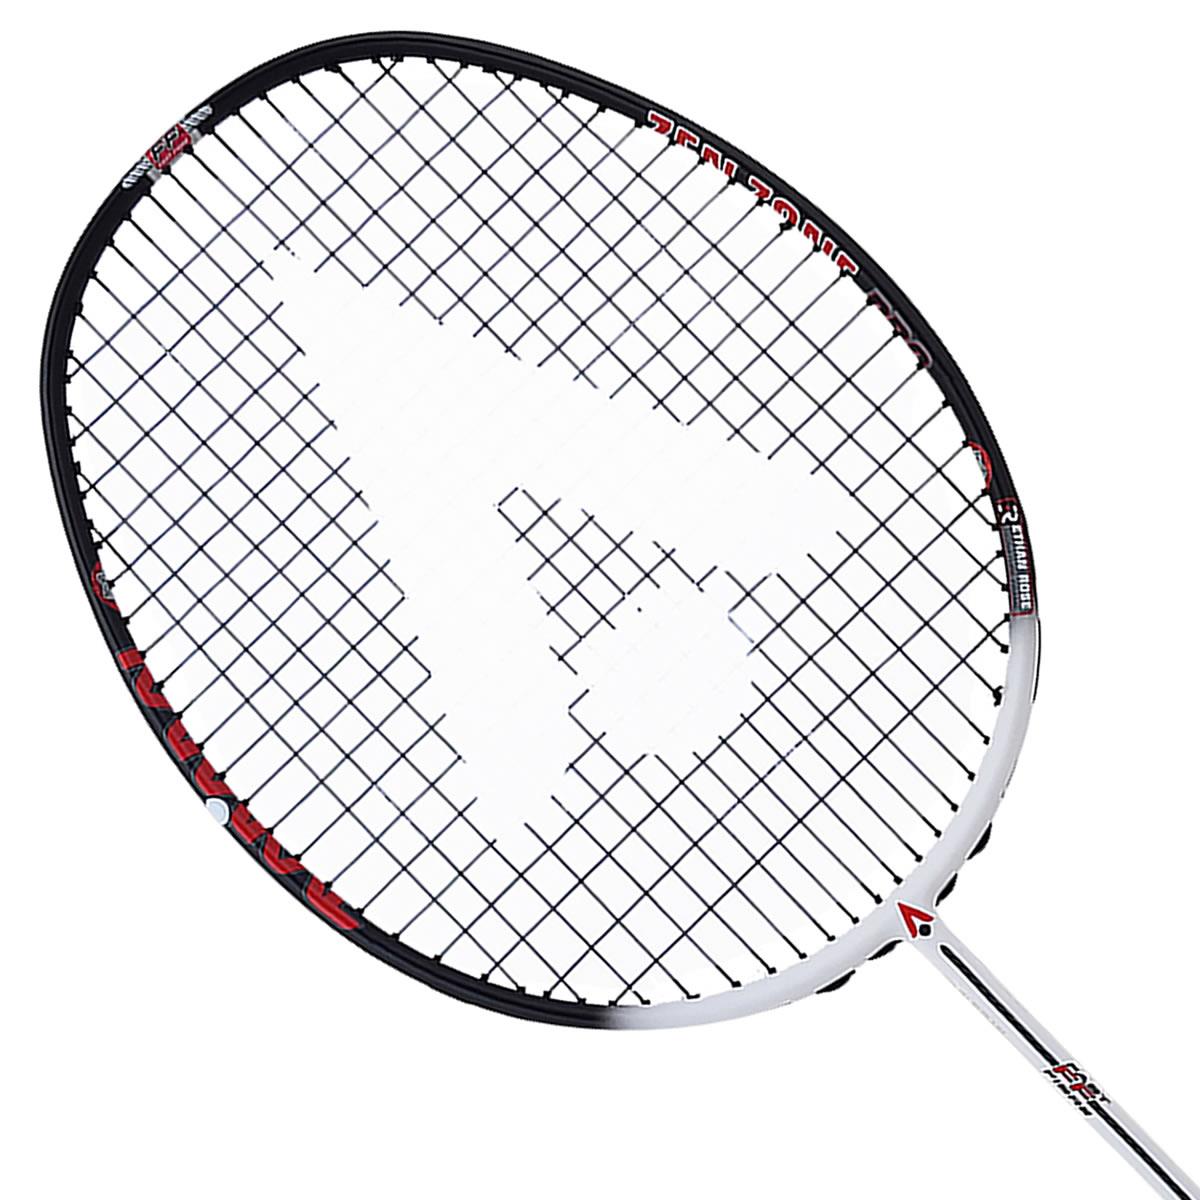 Karakal ER Zen Zone Pro Badminton Racket - White